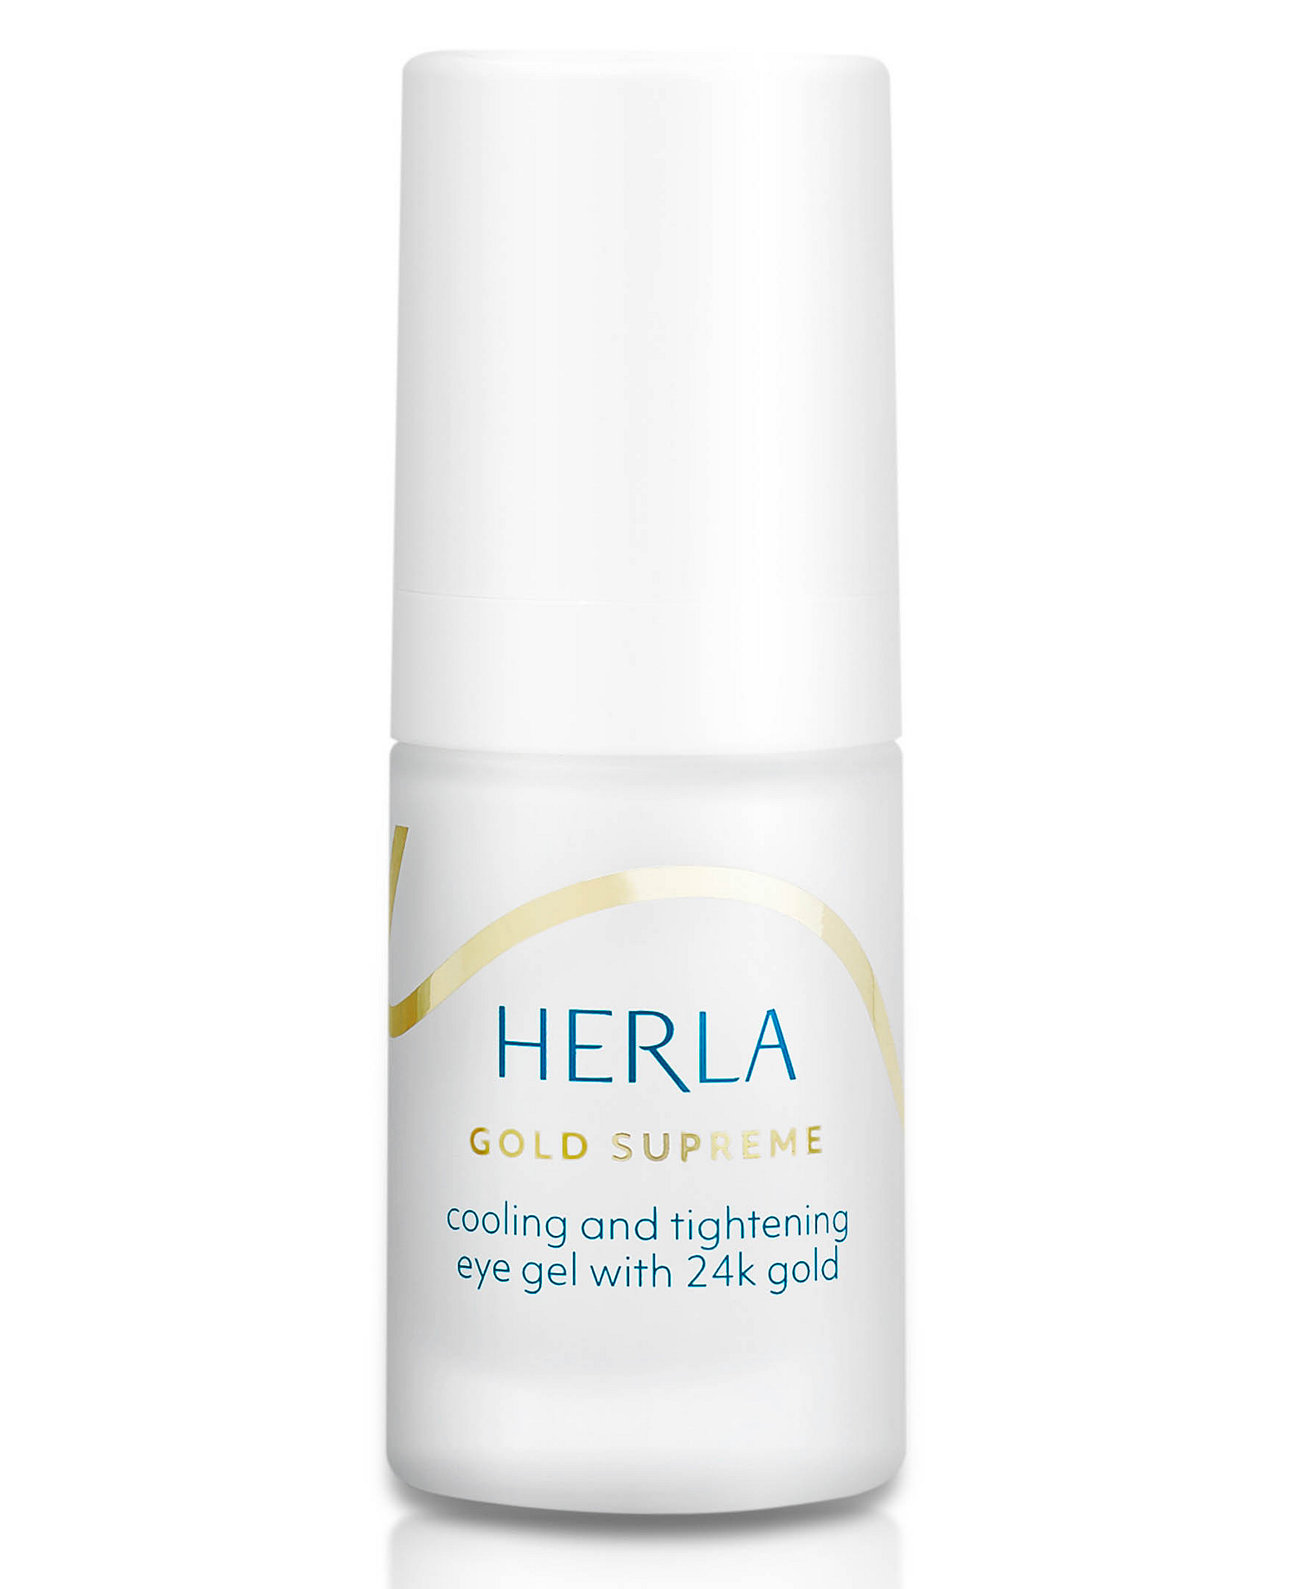 Gold Supreme Охлаждающий и подтягивающий гель для век с 24K Gold HERLA